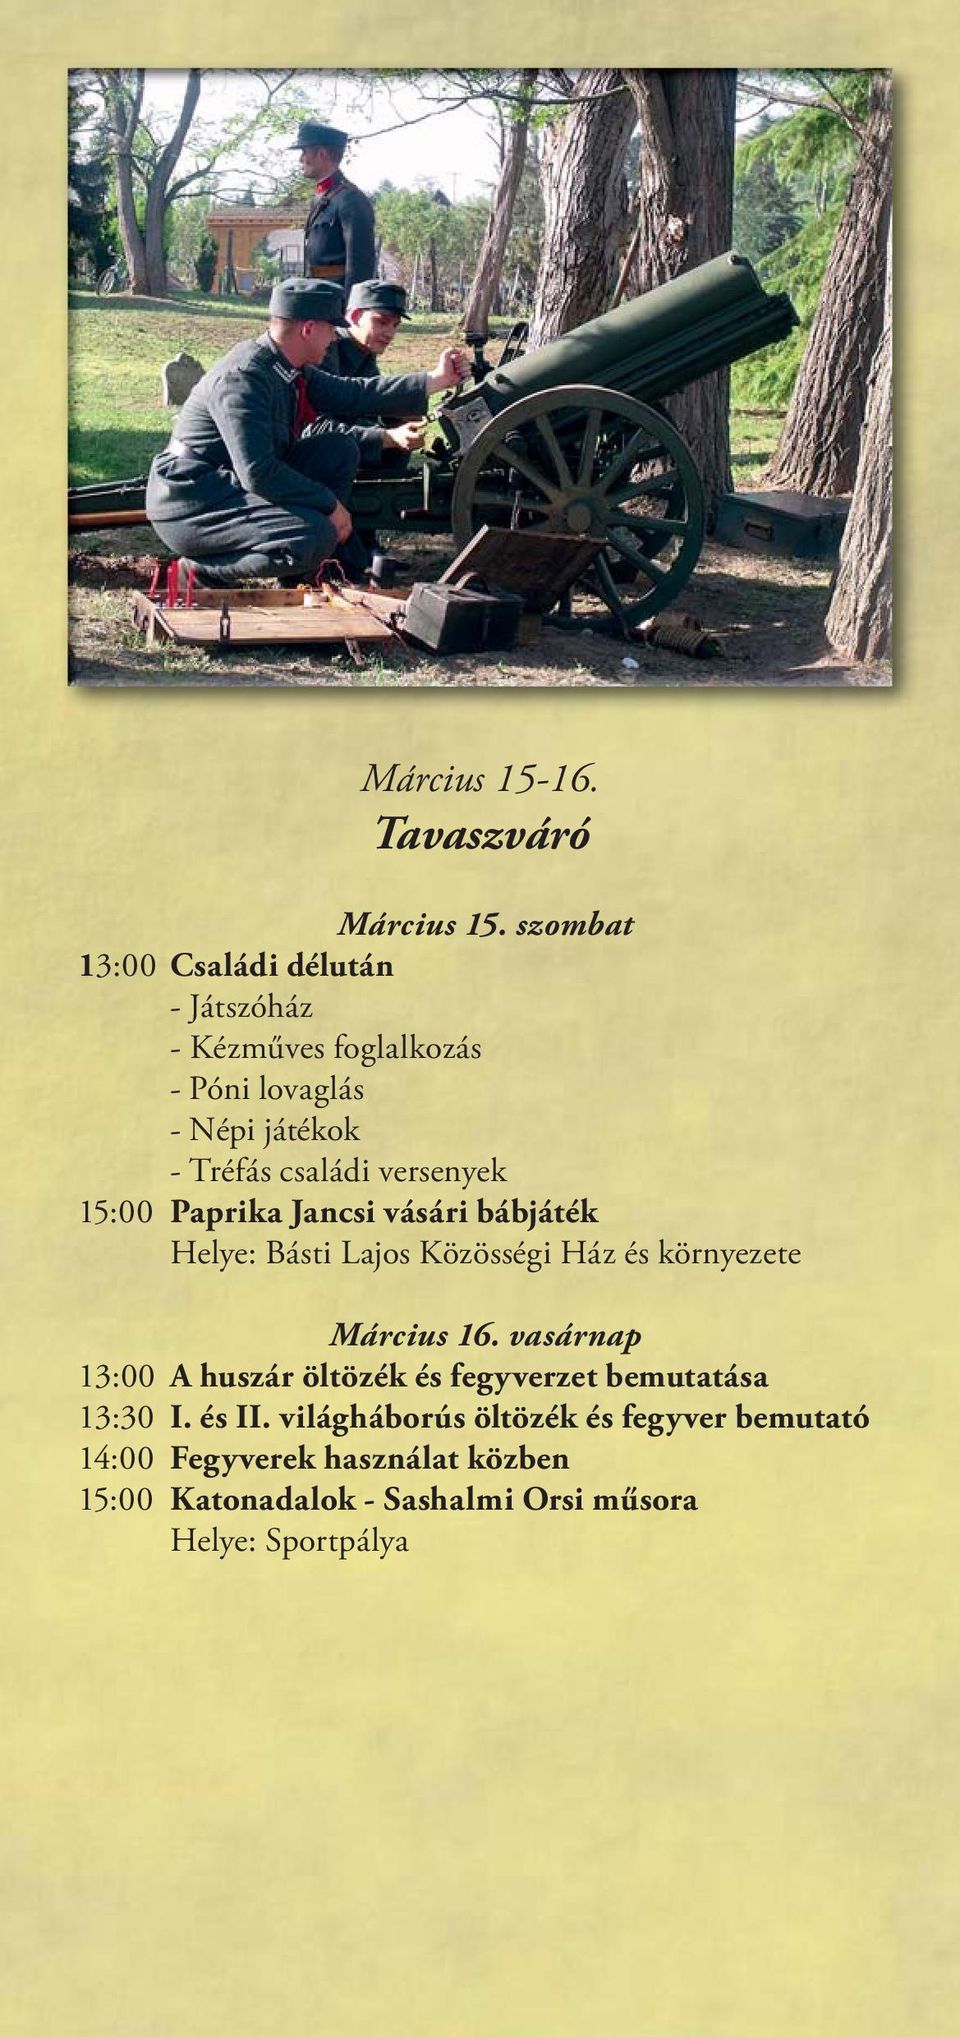 versenyek 15:00 Paprika Jancsi vásári bábjáték Helye: Básti Lajos Közösségi Ház és környezete Március 16.